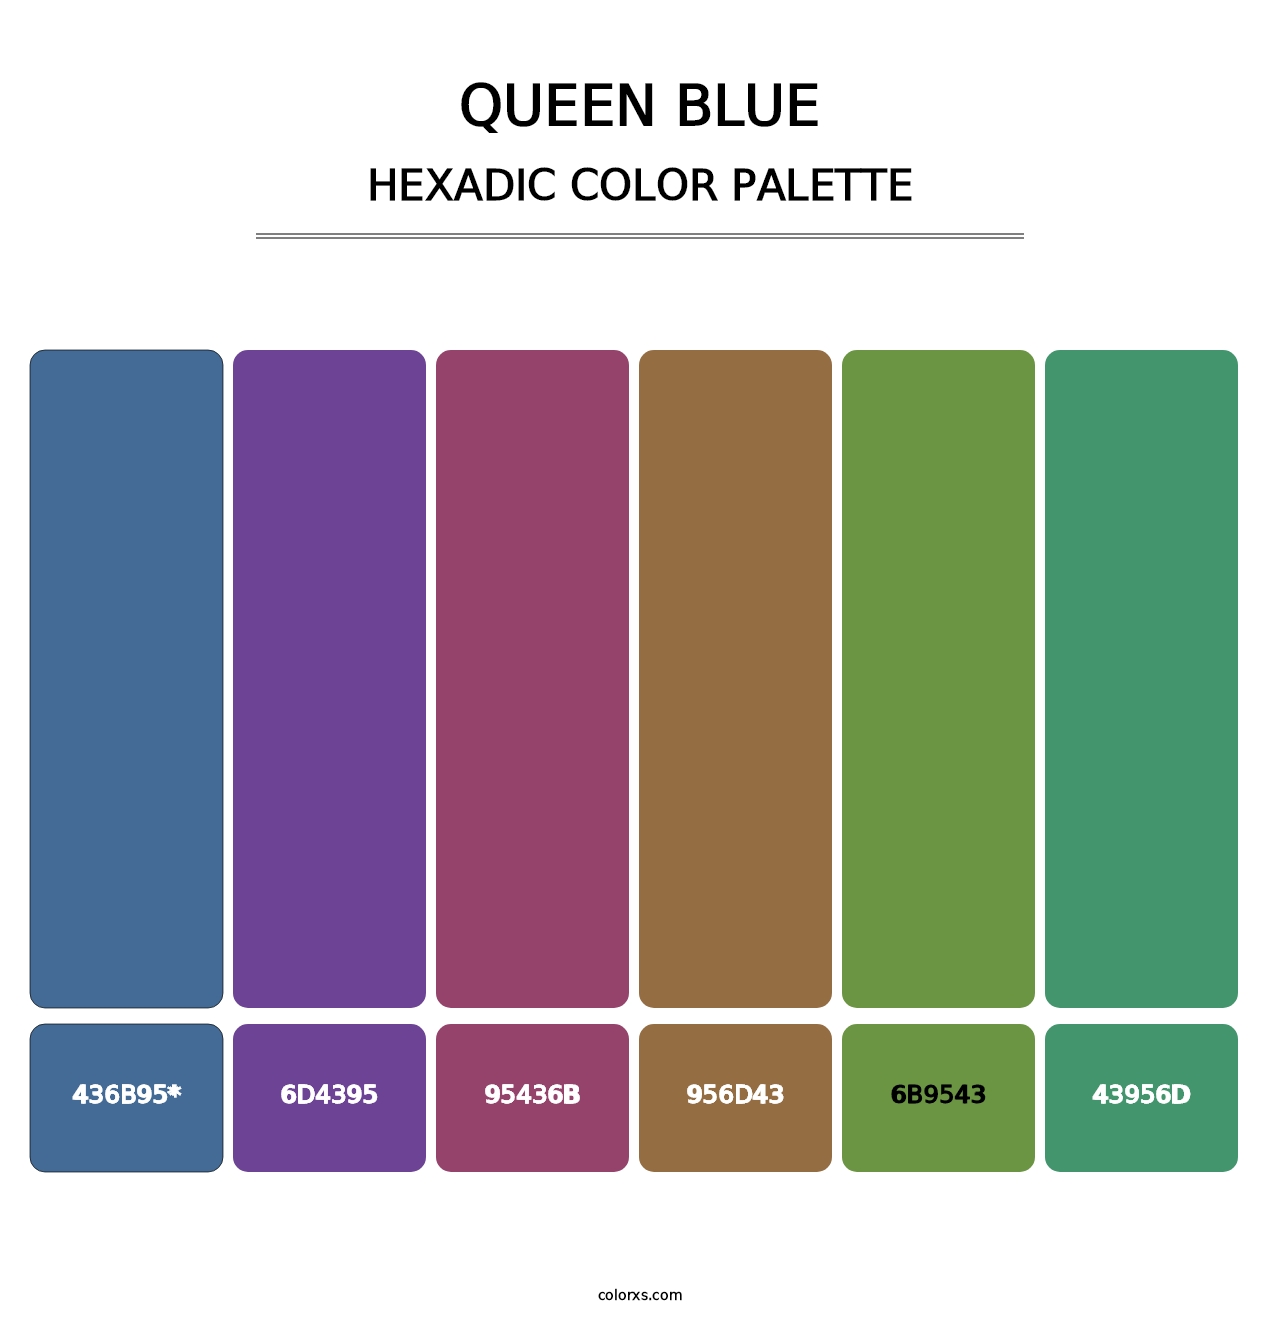 Queen Blue - Hexadic Color Palette